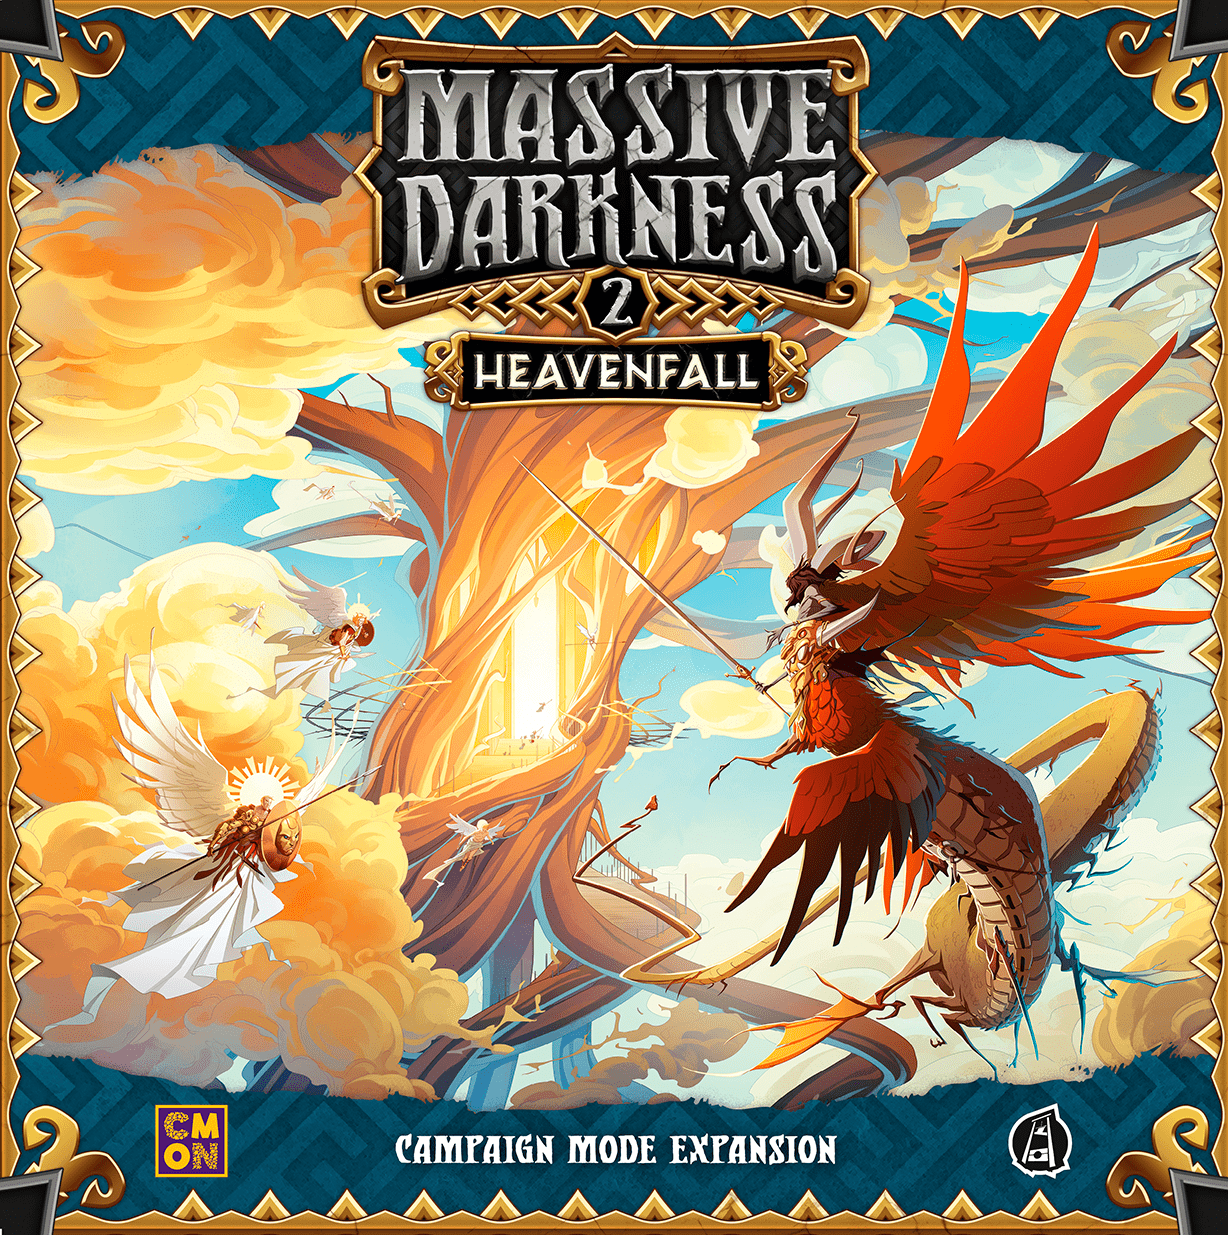 Cool Mini Or Not Massive Darkness 2: Heavenfall